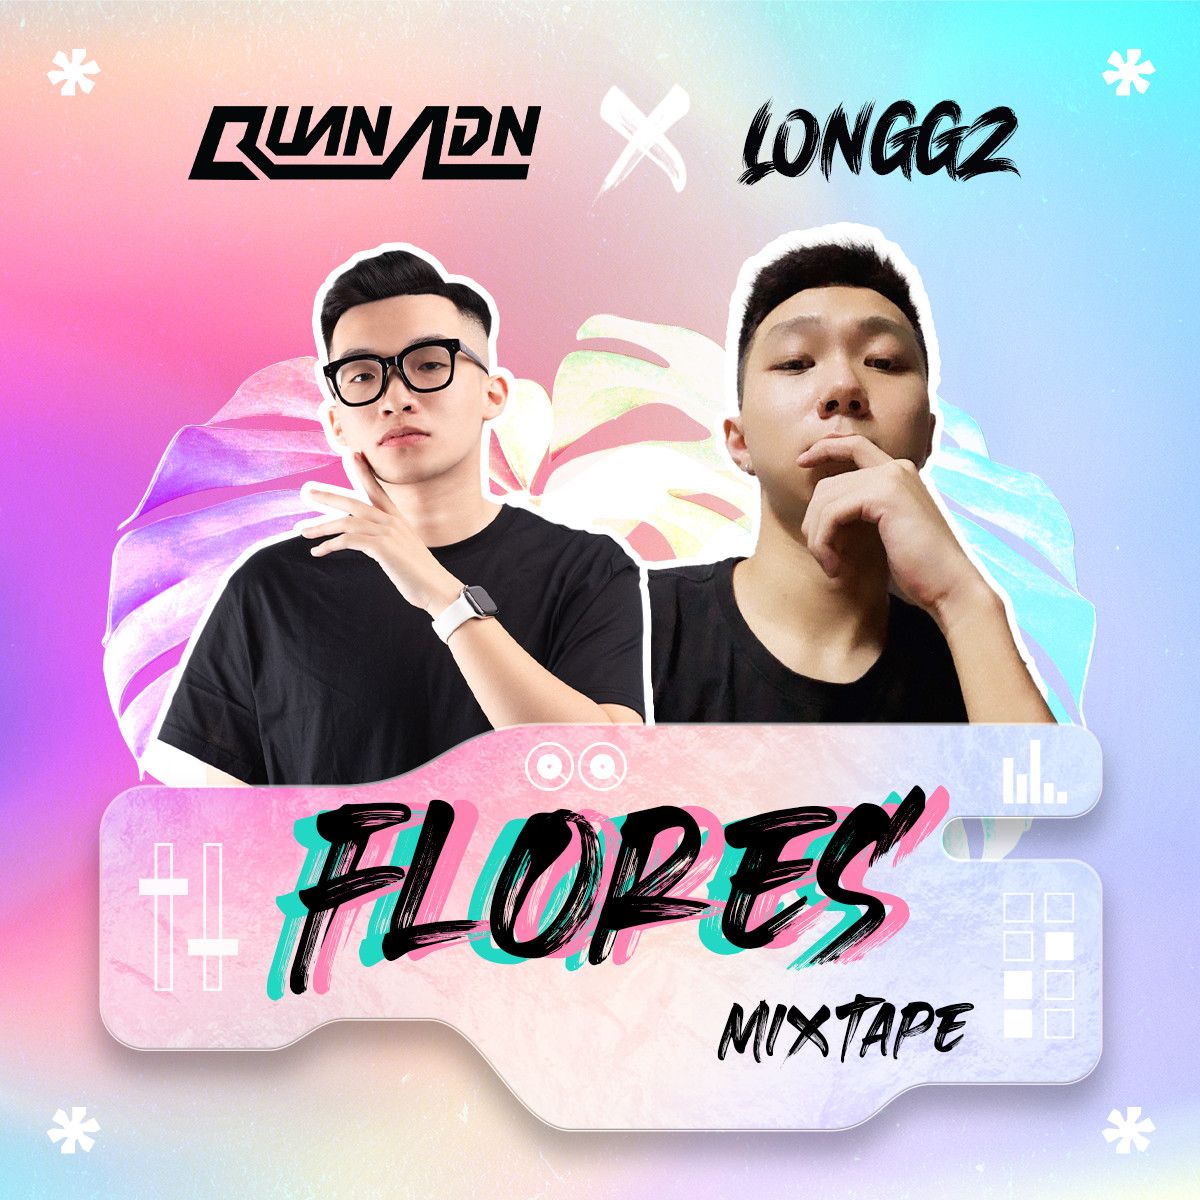 ਡਾਉਨਲੋਡ ਕਰੋ Mixtape - Flores by Quan ADN & LONGGZ